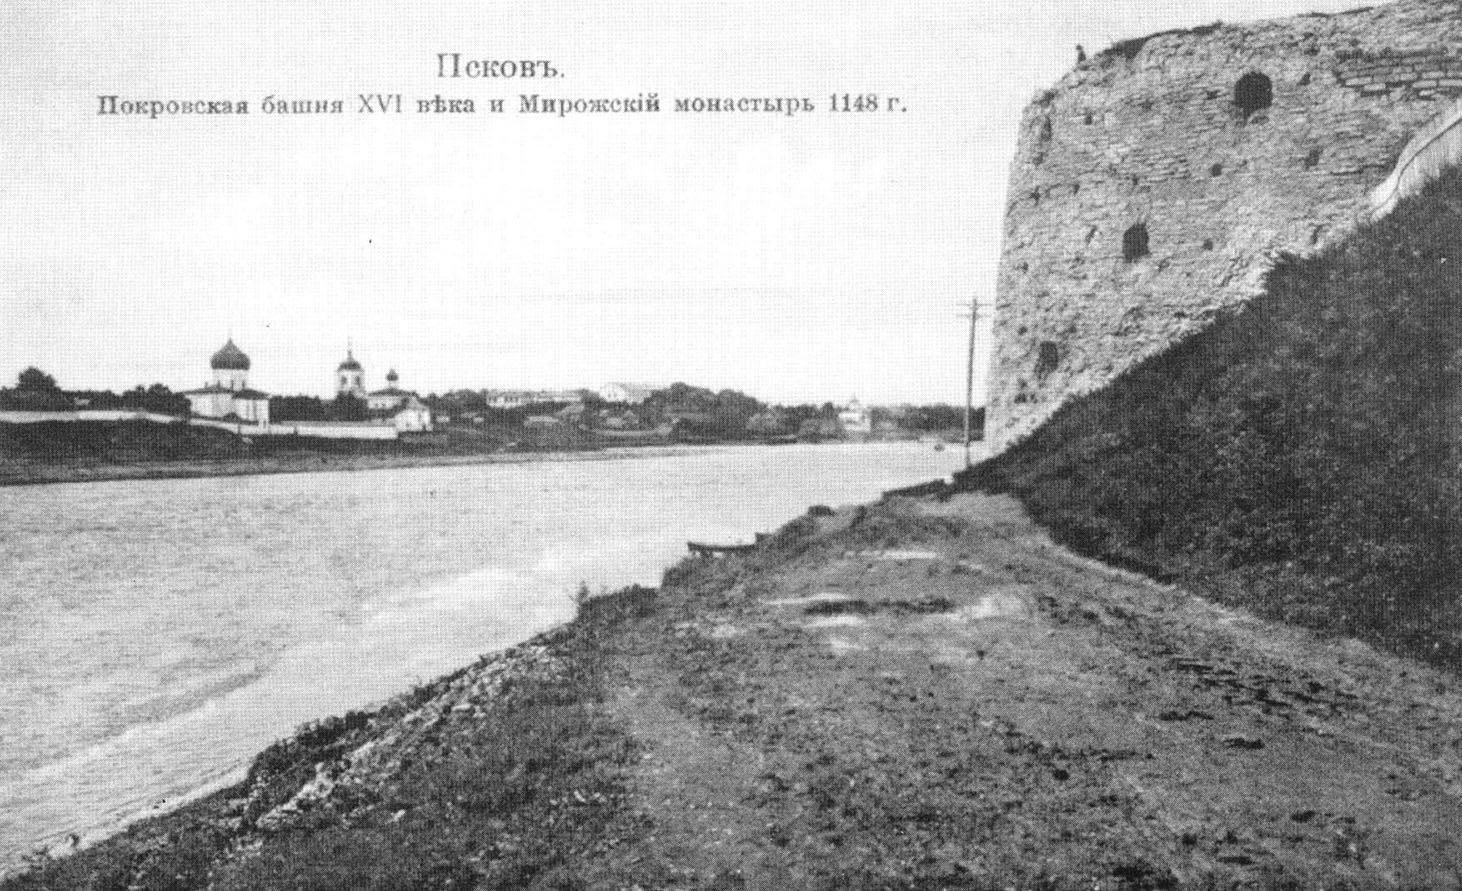 Псков. Покровская башня XVI века и Мирожский монастырь 1148 г.